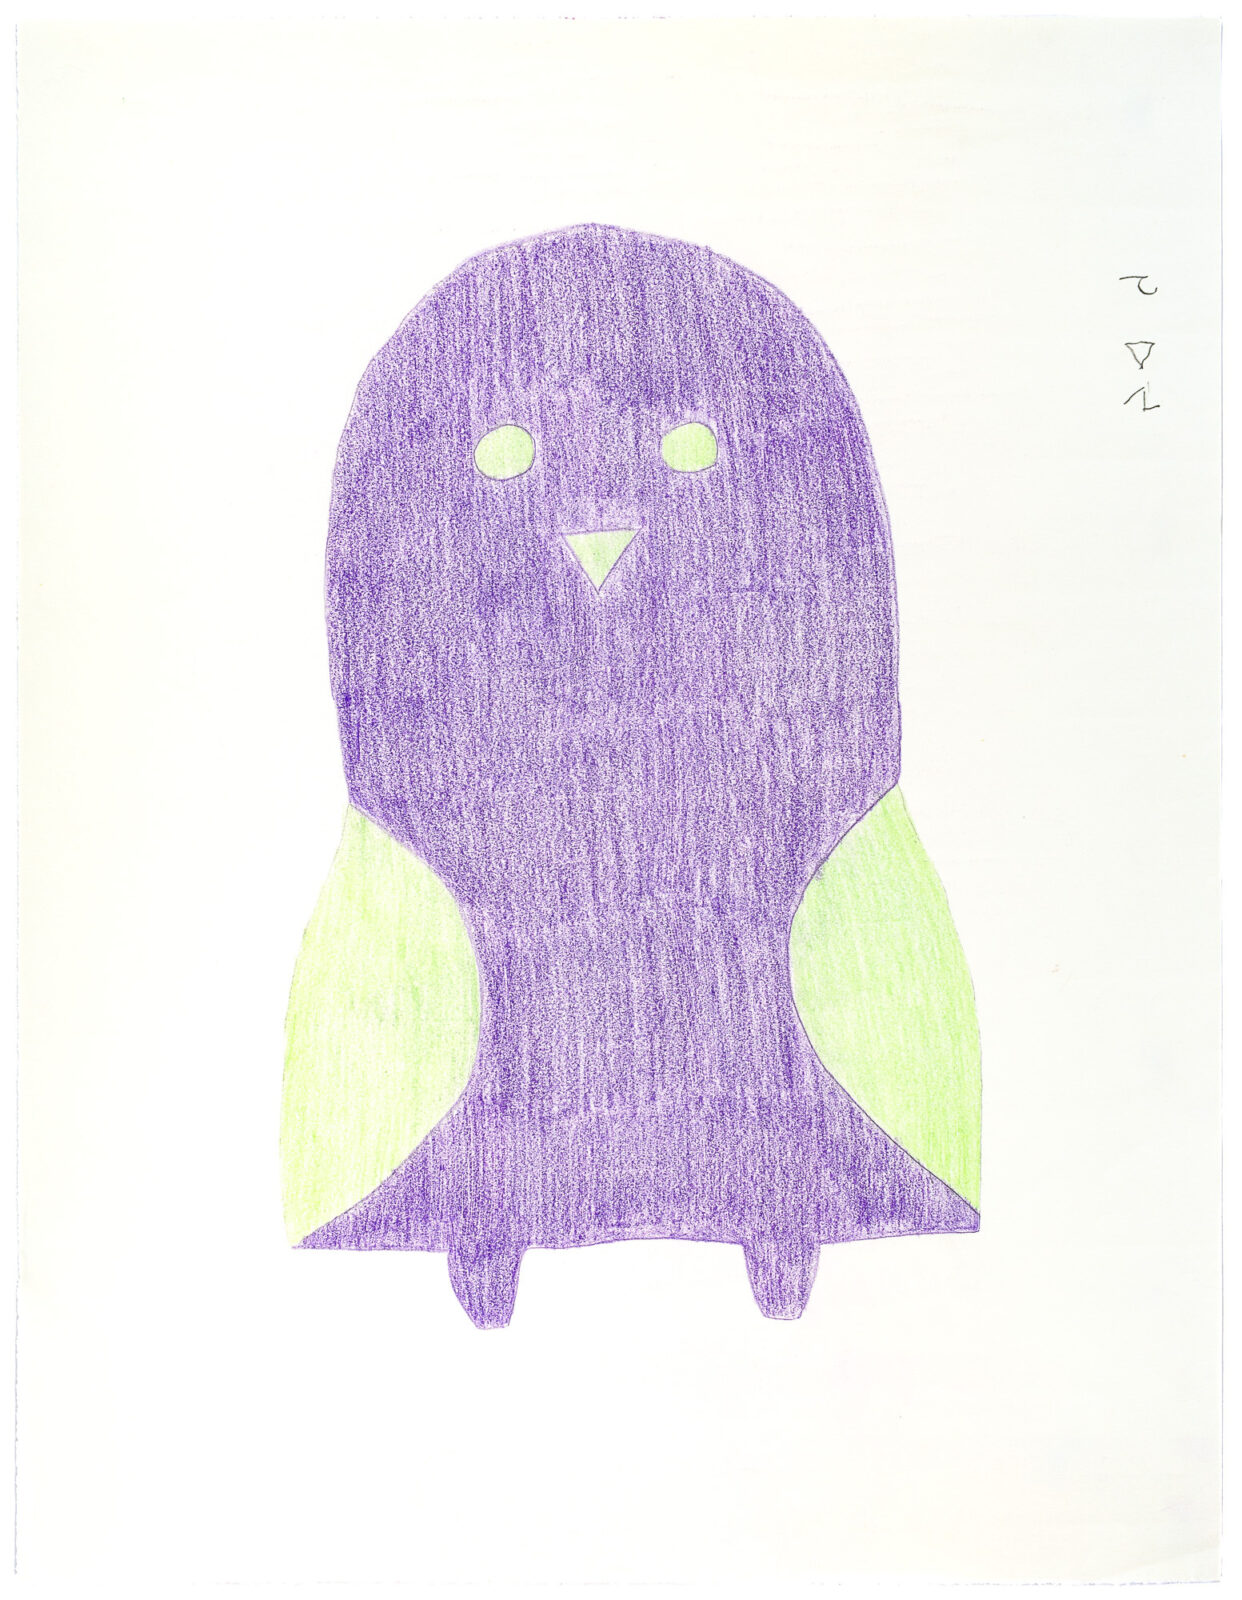 Sheojuk Etidlooie - untitled (purple bird with green wings)